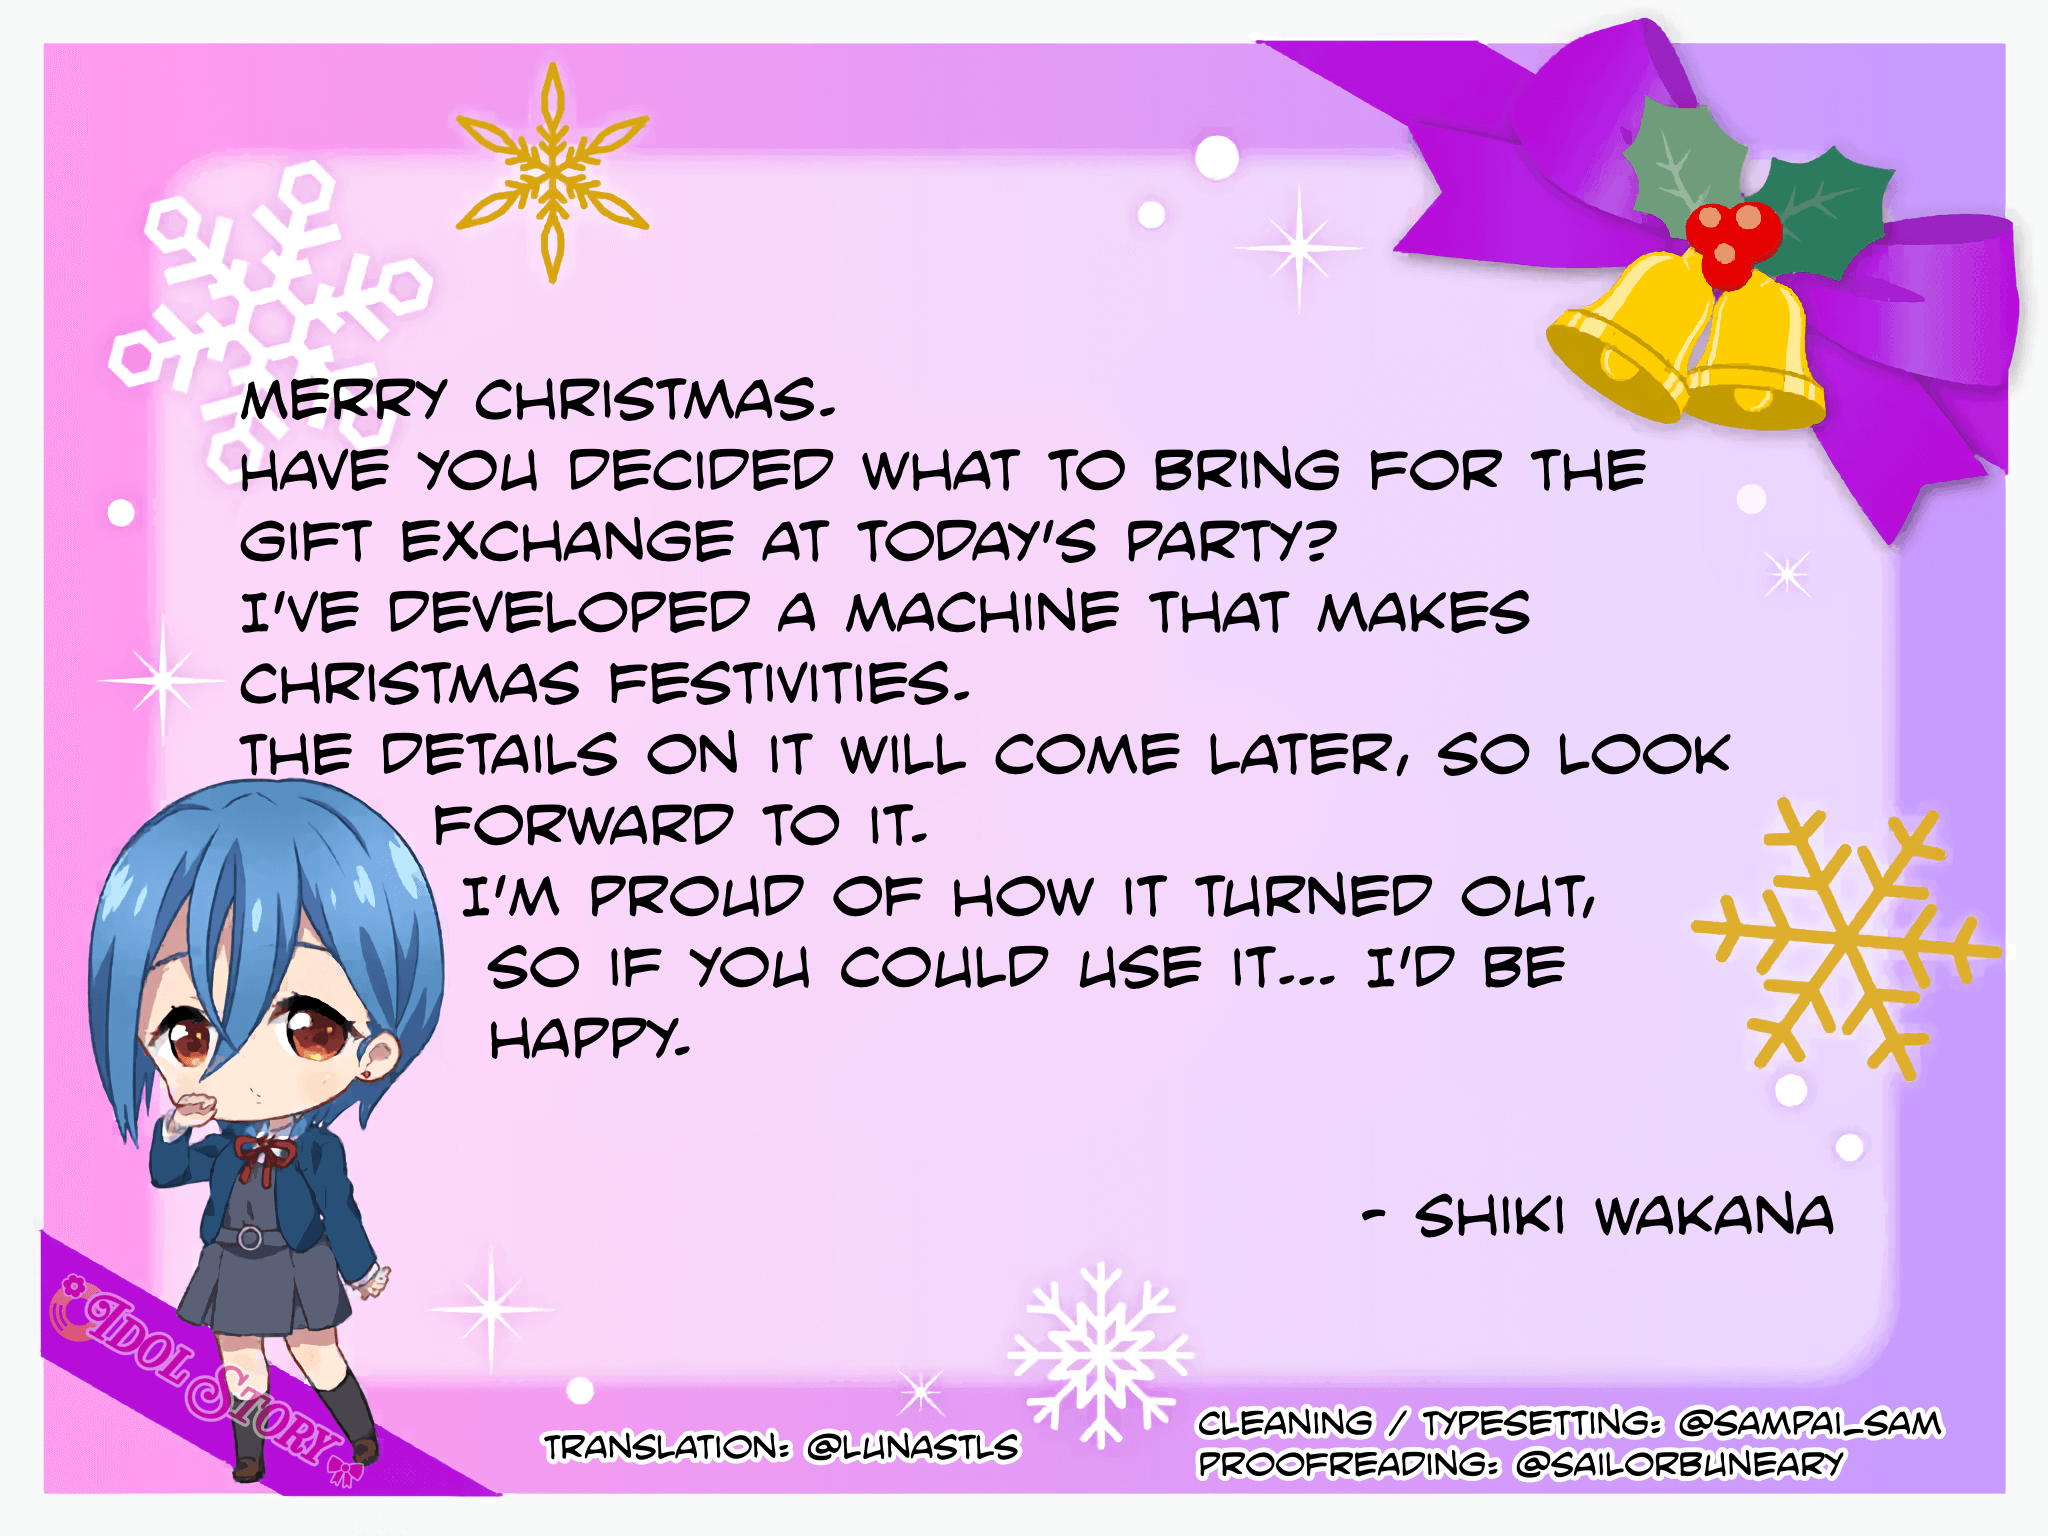 Shiki's Christmas Card